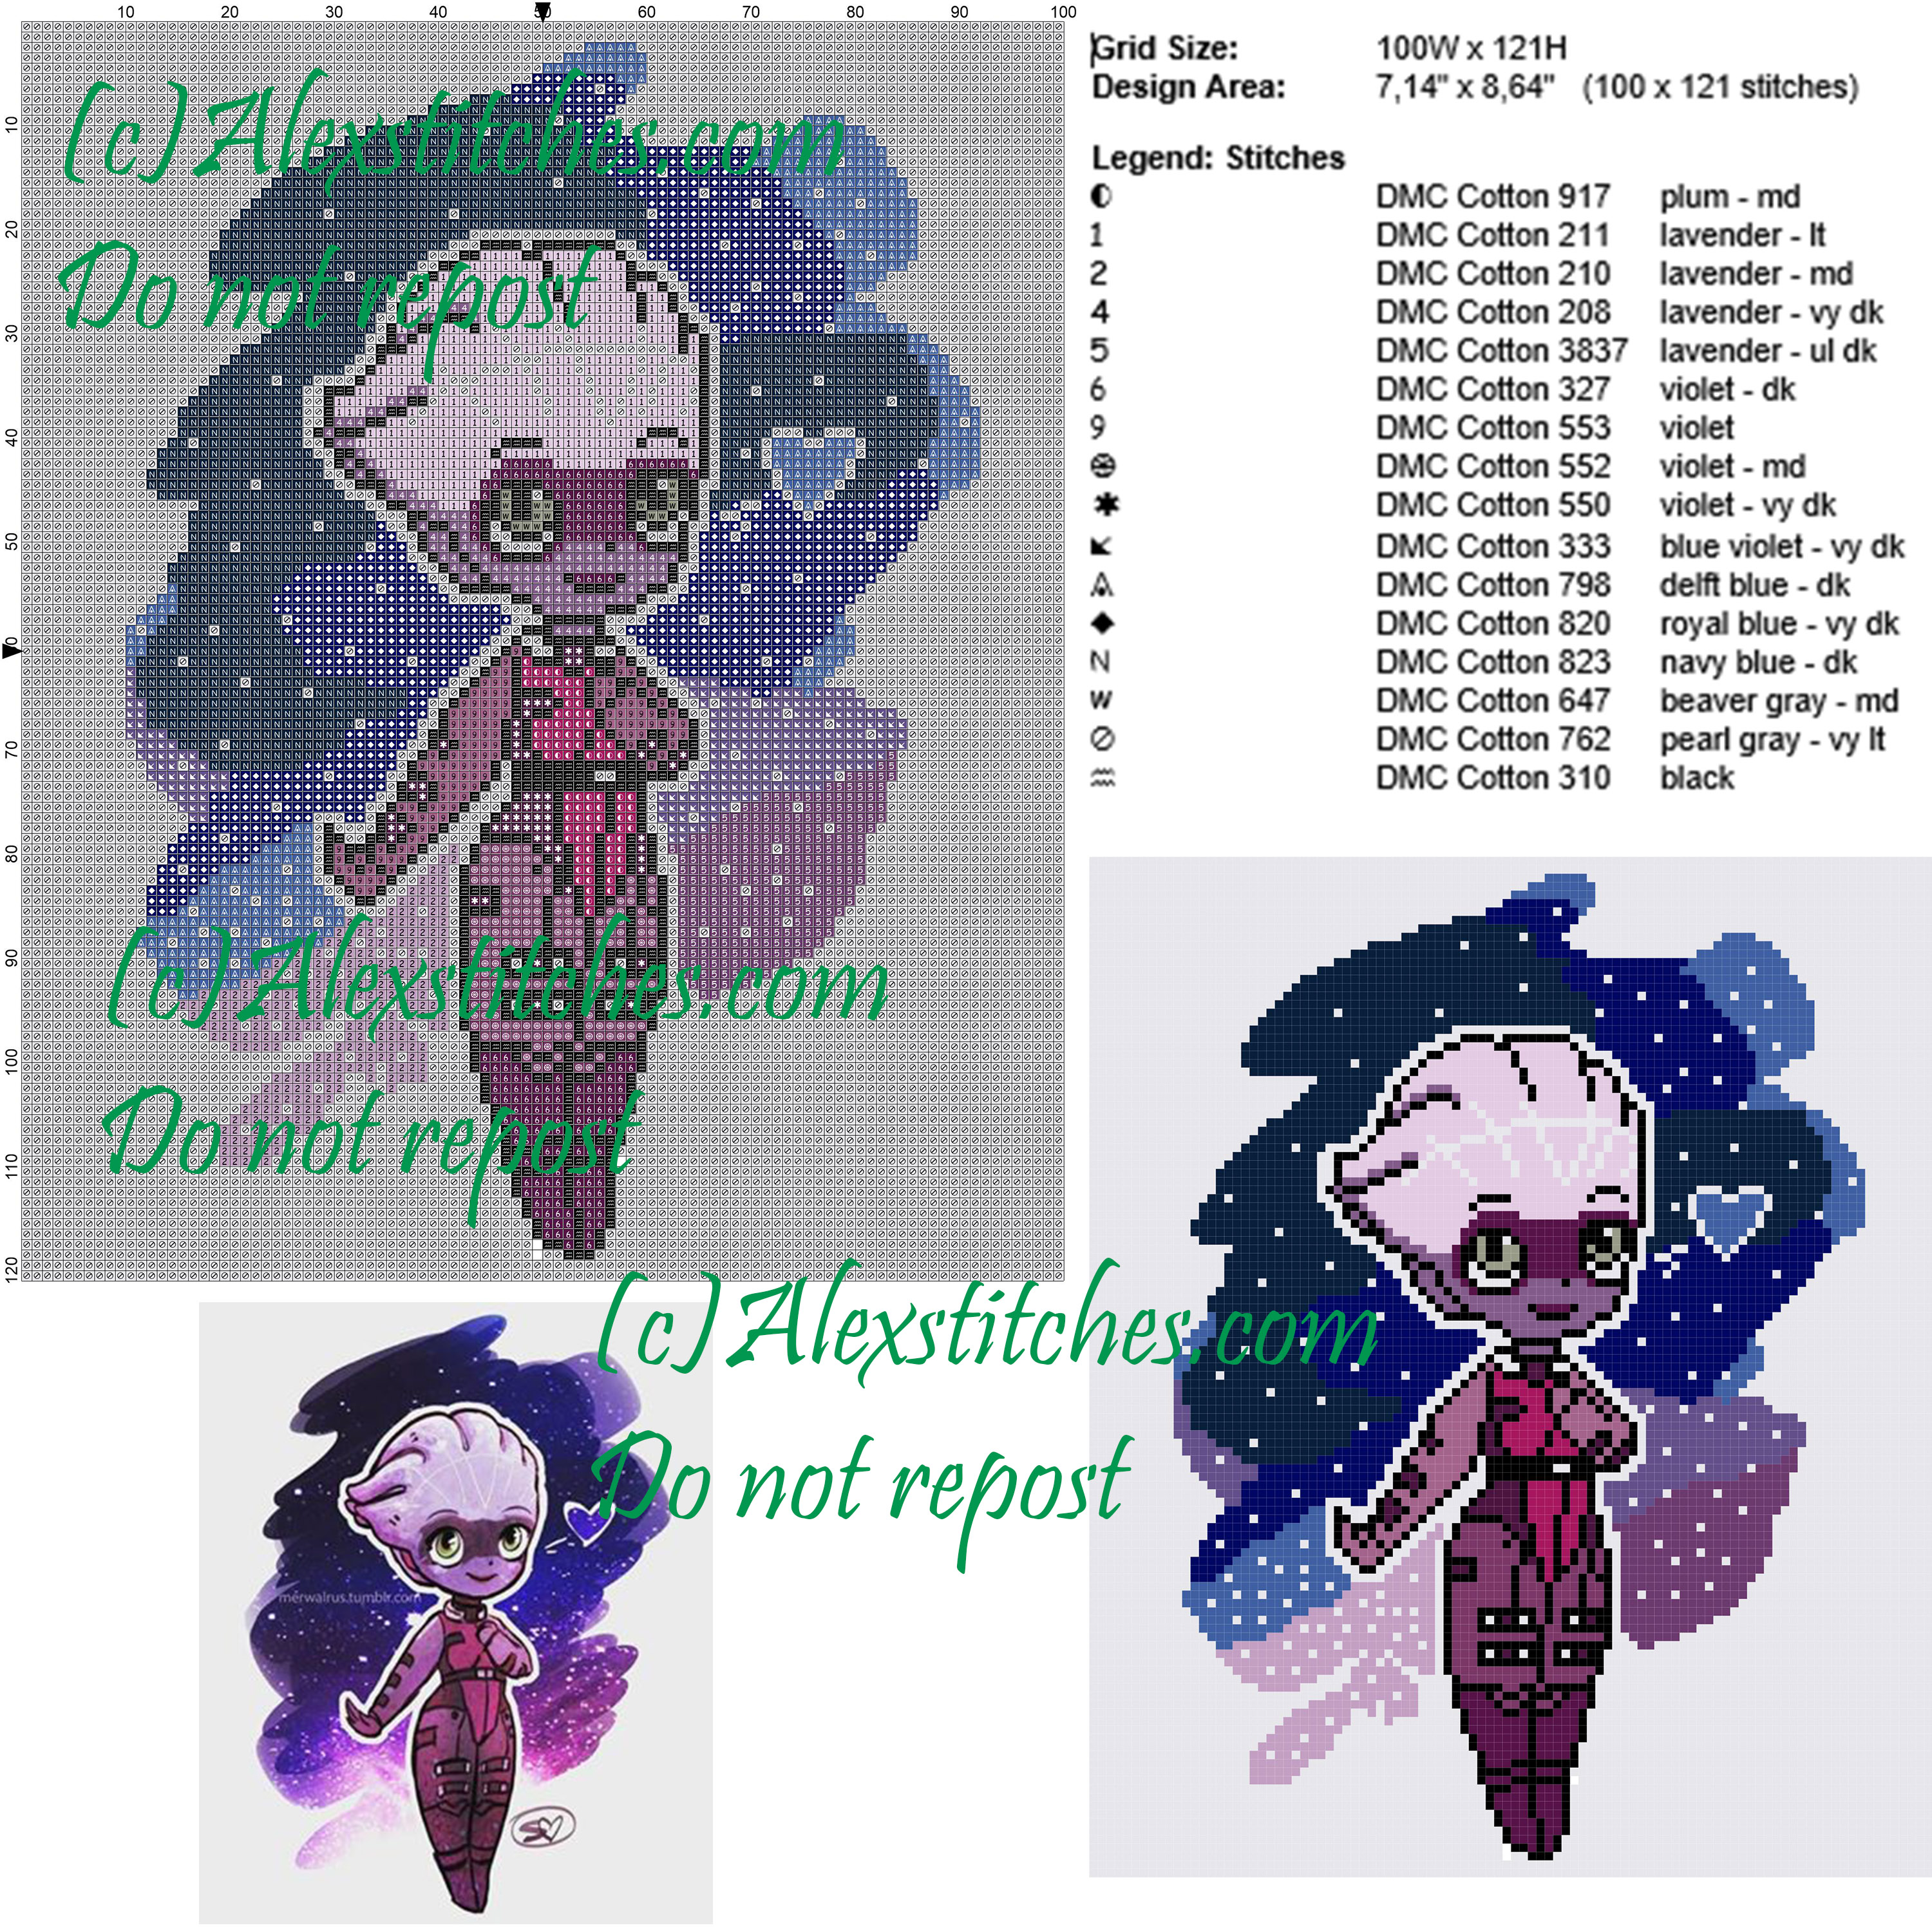 Liara Tsoni (Mass Effect) free cross stitch pattern 100x121 16 colors